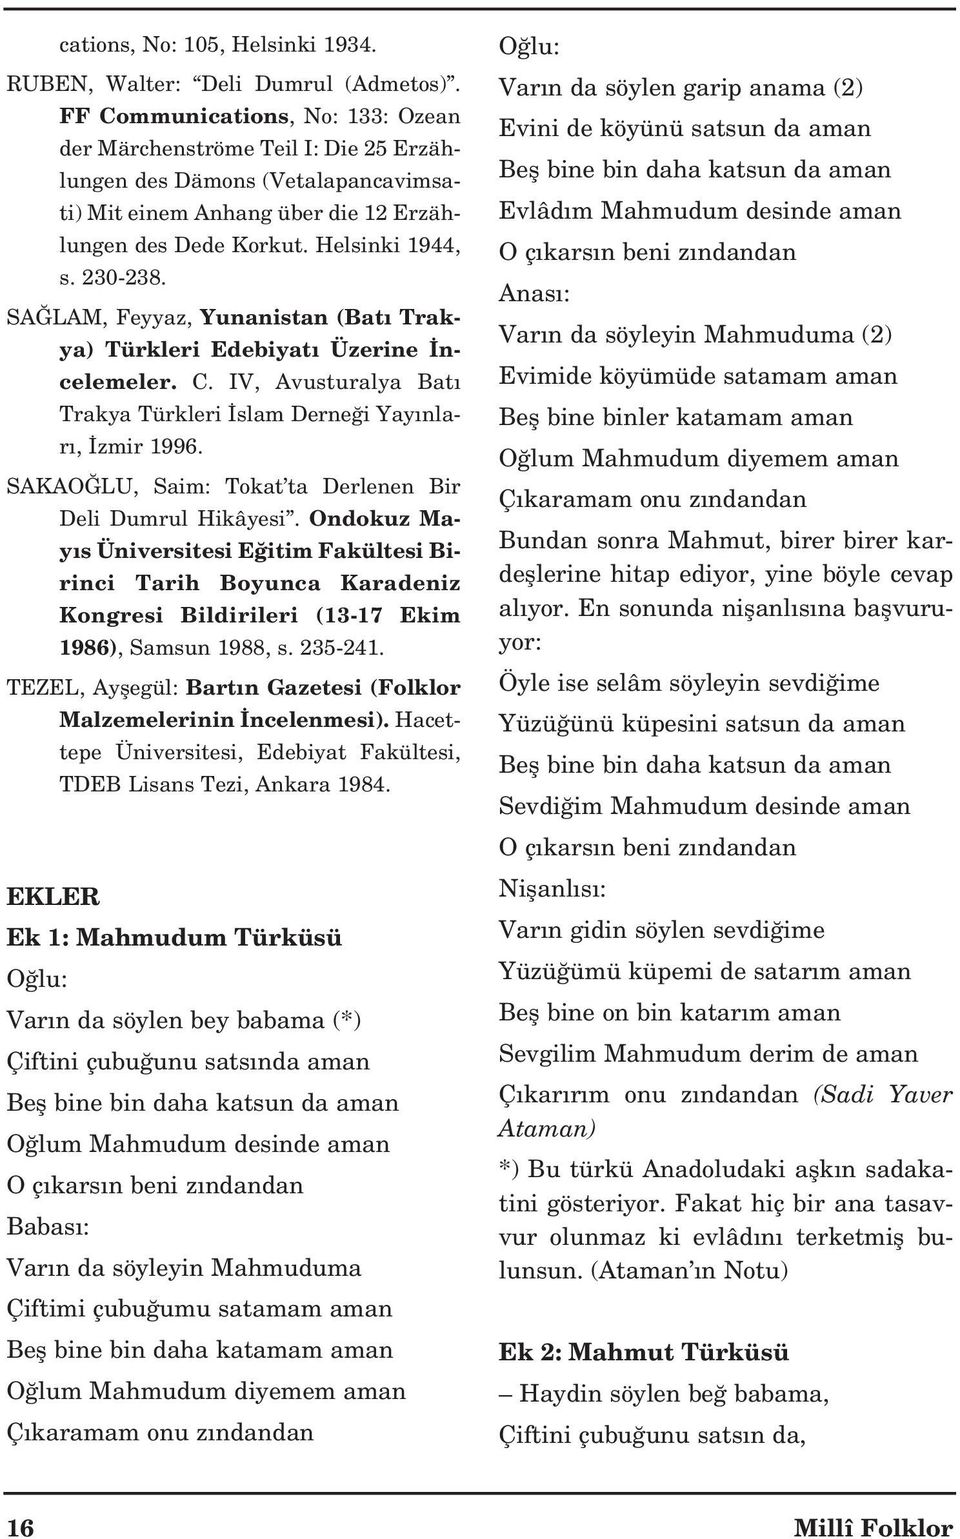 SA LAM, Feyyaz, Yunanistan (Bat Trakya) Türkleri Edebiyat Üzerine ncelemeler. C. IV, Avusturalya Bat Trakya Türkleri slam Derne i Yay nlar, zmir 1996.